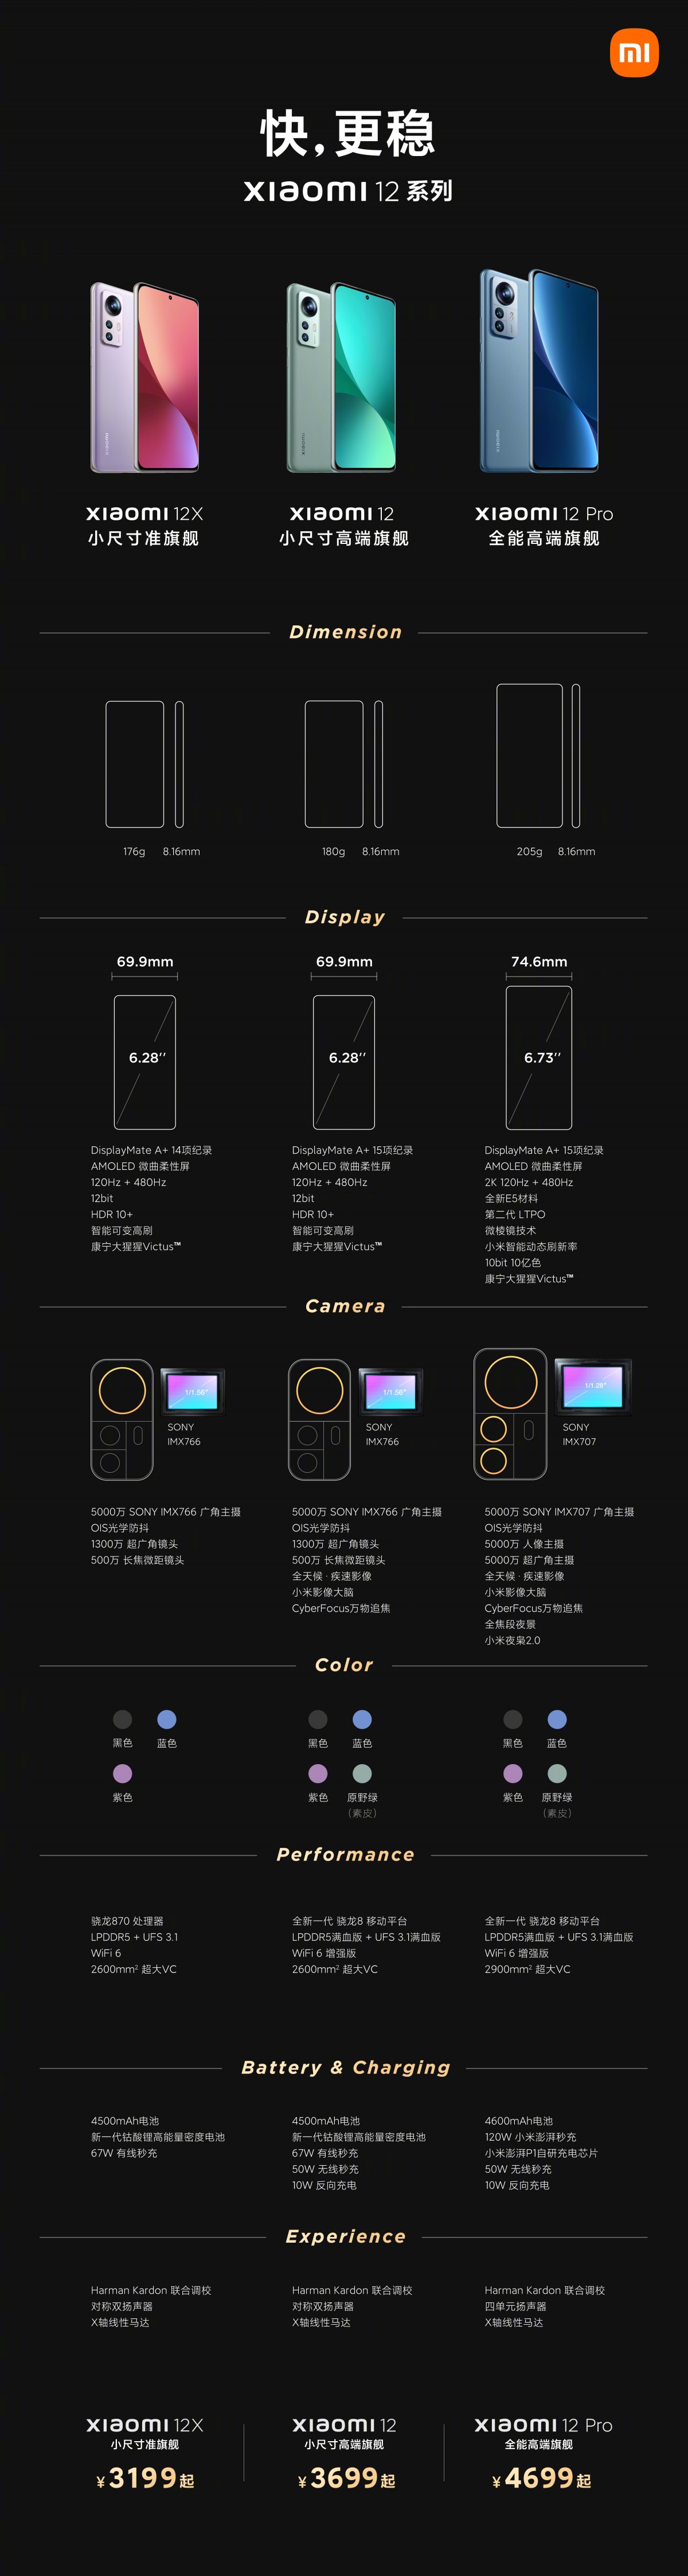 Jajak Pendapat Mingguan: Apa pendapat Anda tentang seri Xiaomi 12?